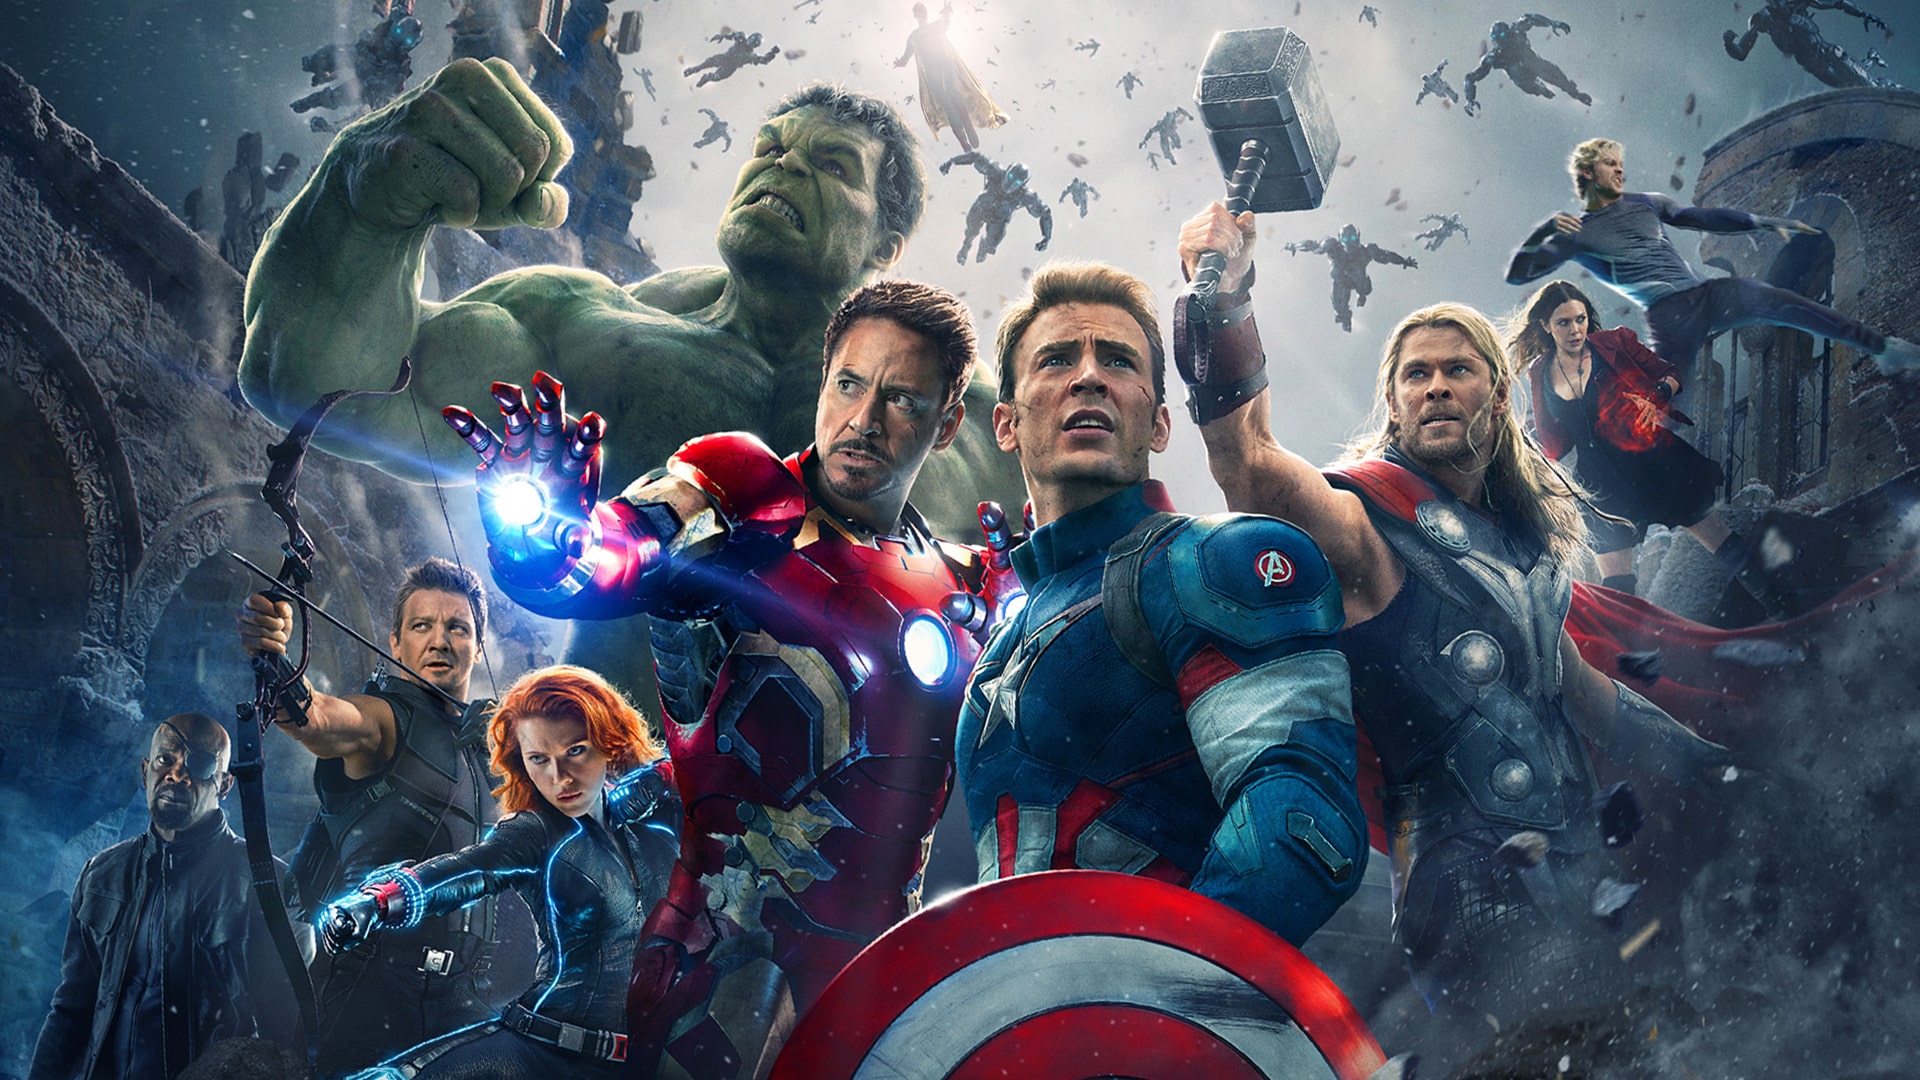 Avengers 4: nuove promo art mostrano Captain America senza barba e altri eroi